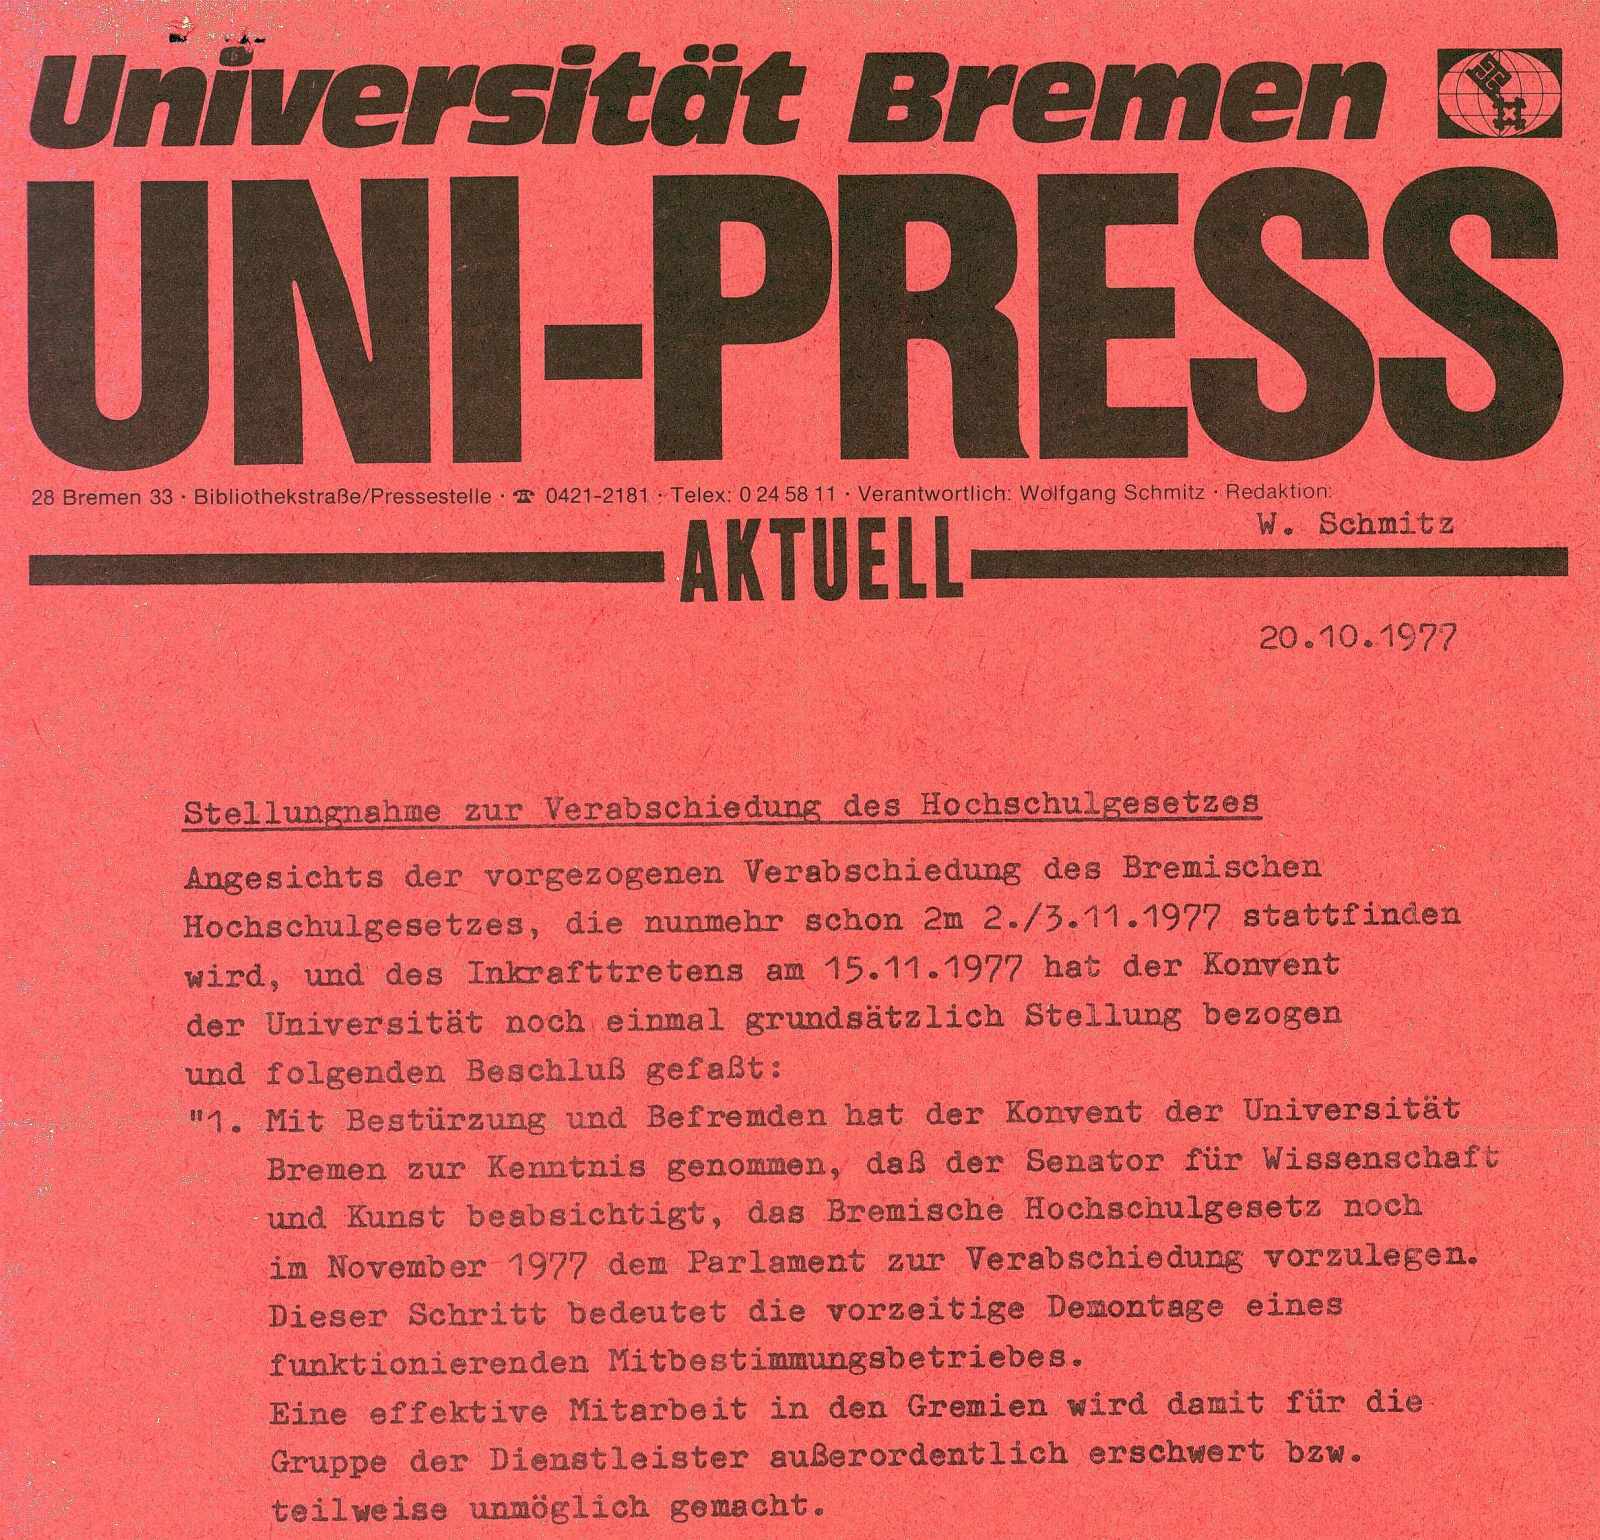 Kritik des Konvents der Universität Bremen an der Verabschiedung des Hochschulgesetzes und der damit verbundenen Einschränkung der Mitbestimmung.